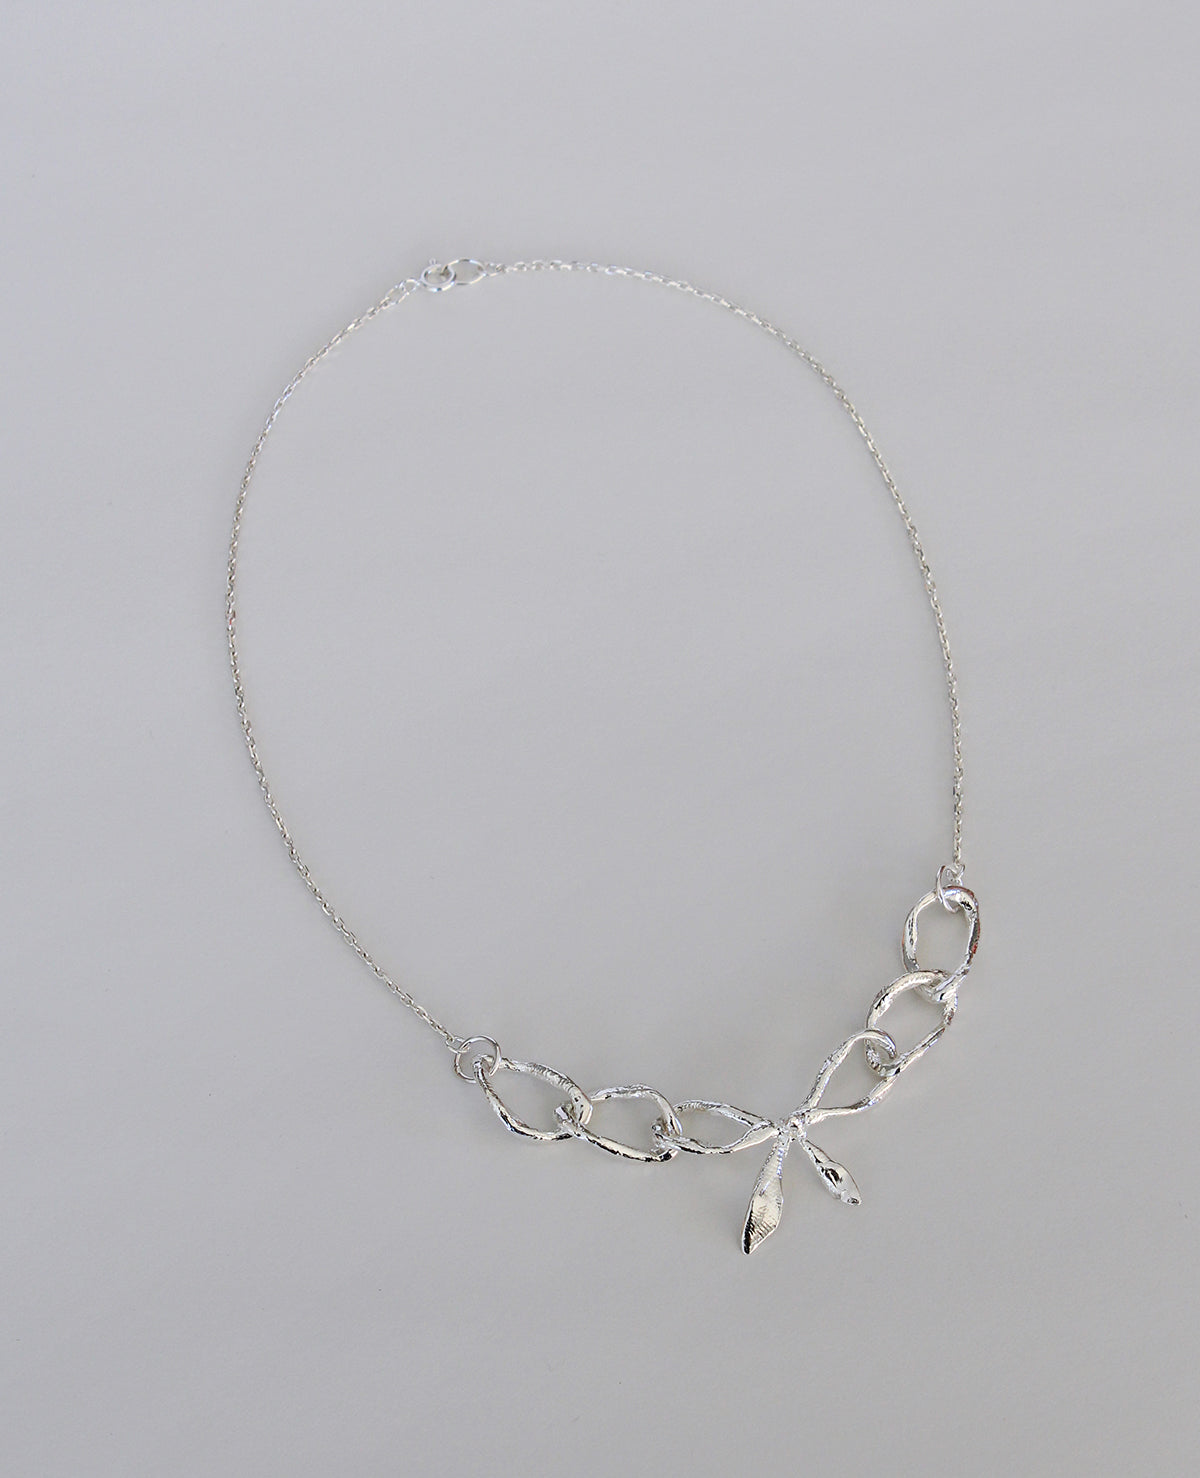 BOW REALIS // collier en argent - ORA-C jewelry - bijoux faits à la main par Caroline Pham, designer indépendante basée à Montréal